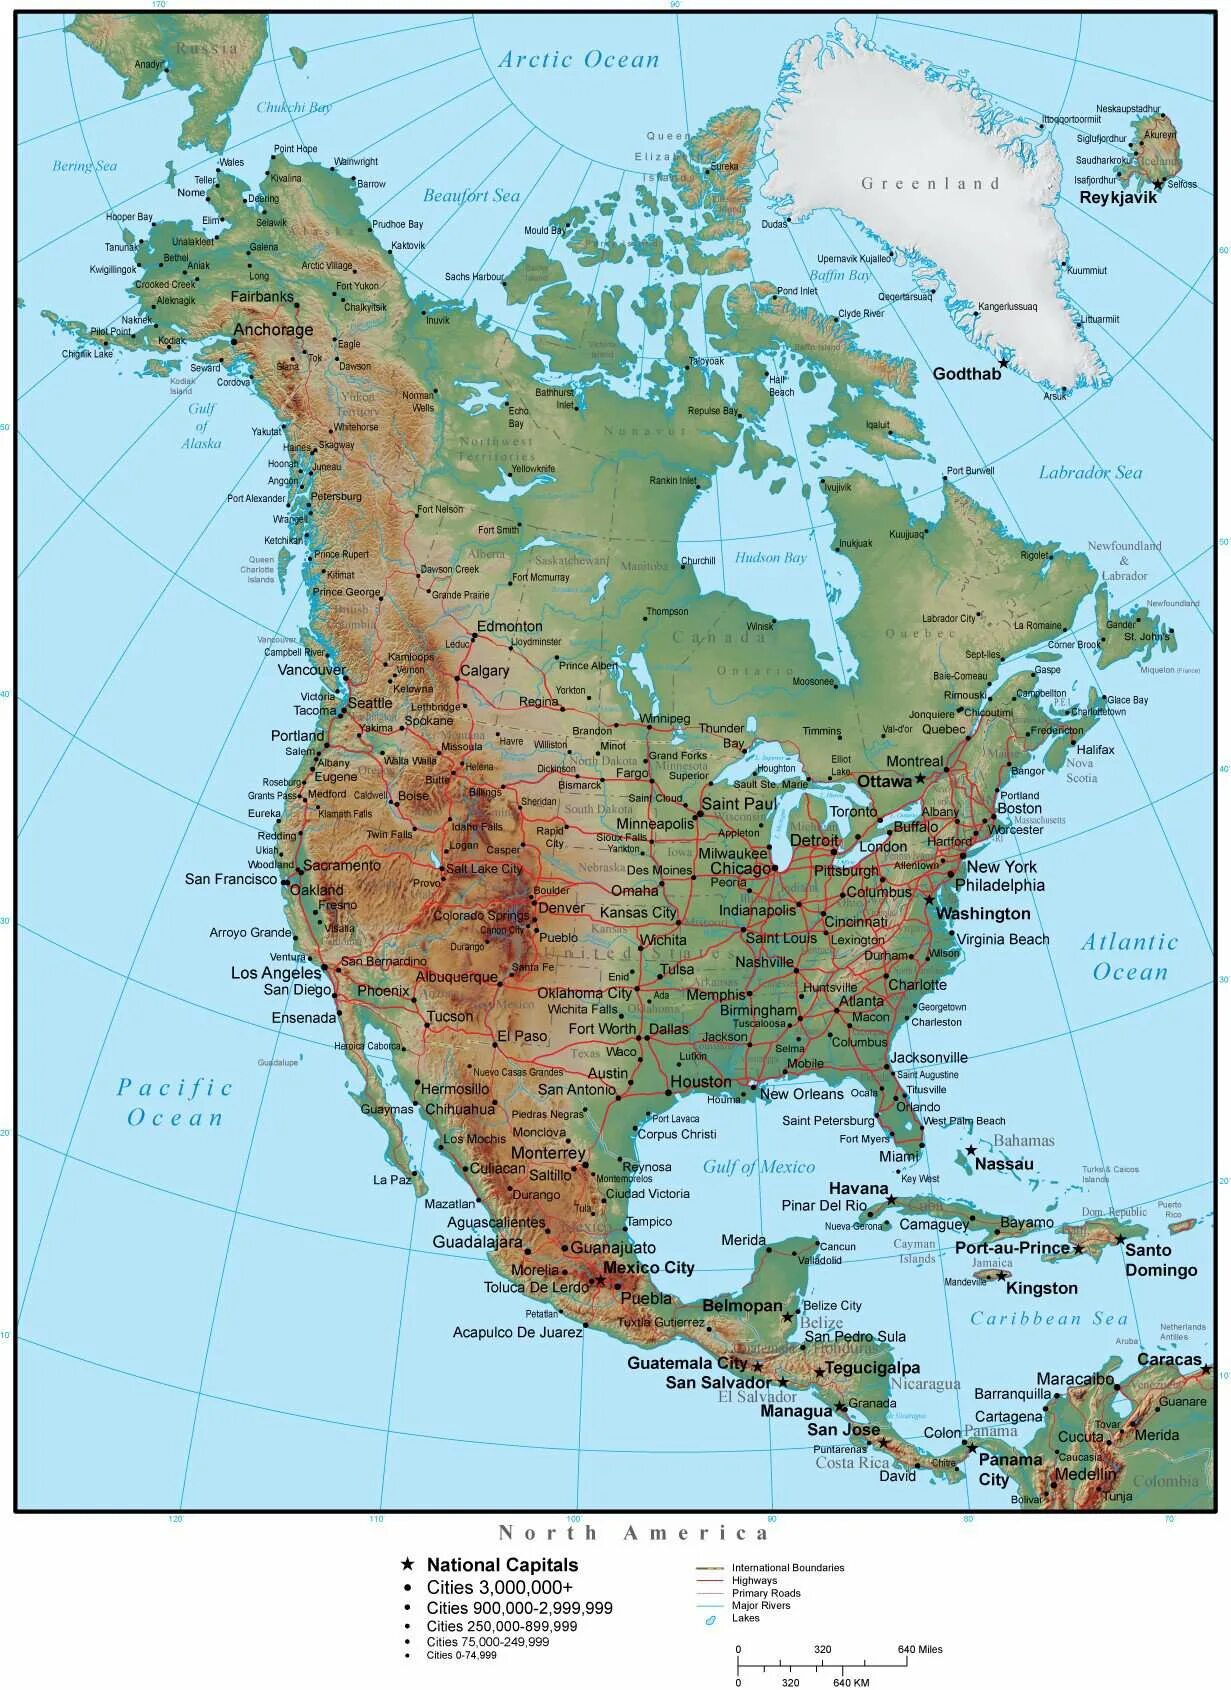 Реки берущие начало в кордильерах. Горы Кордильеры на физической карте Северной Америки. Скалистые горы на карте Северной Америки. Горы скалистые горы на карте Северной Америки. Скалистые горы на контурной карте Северной Америки.